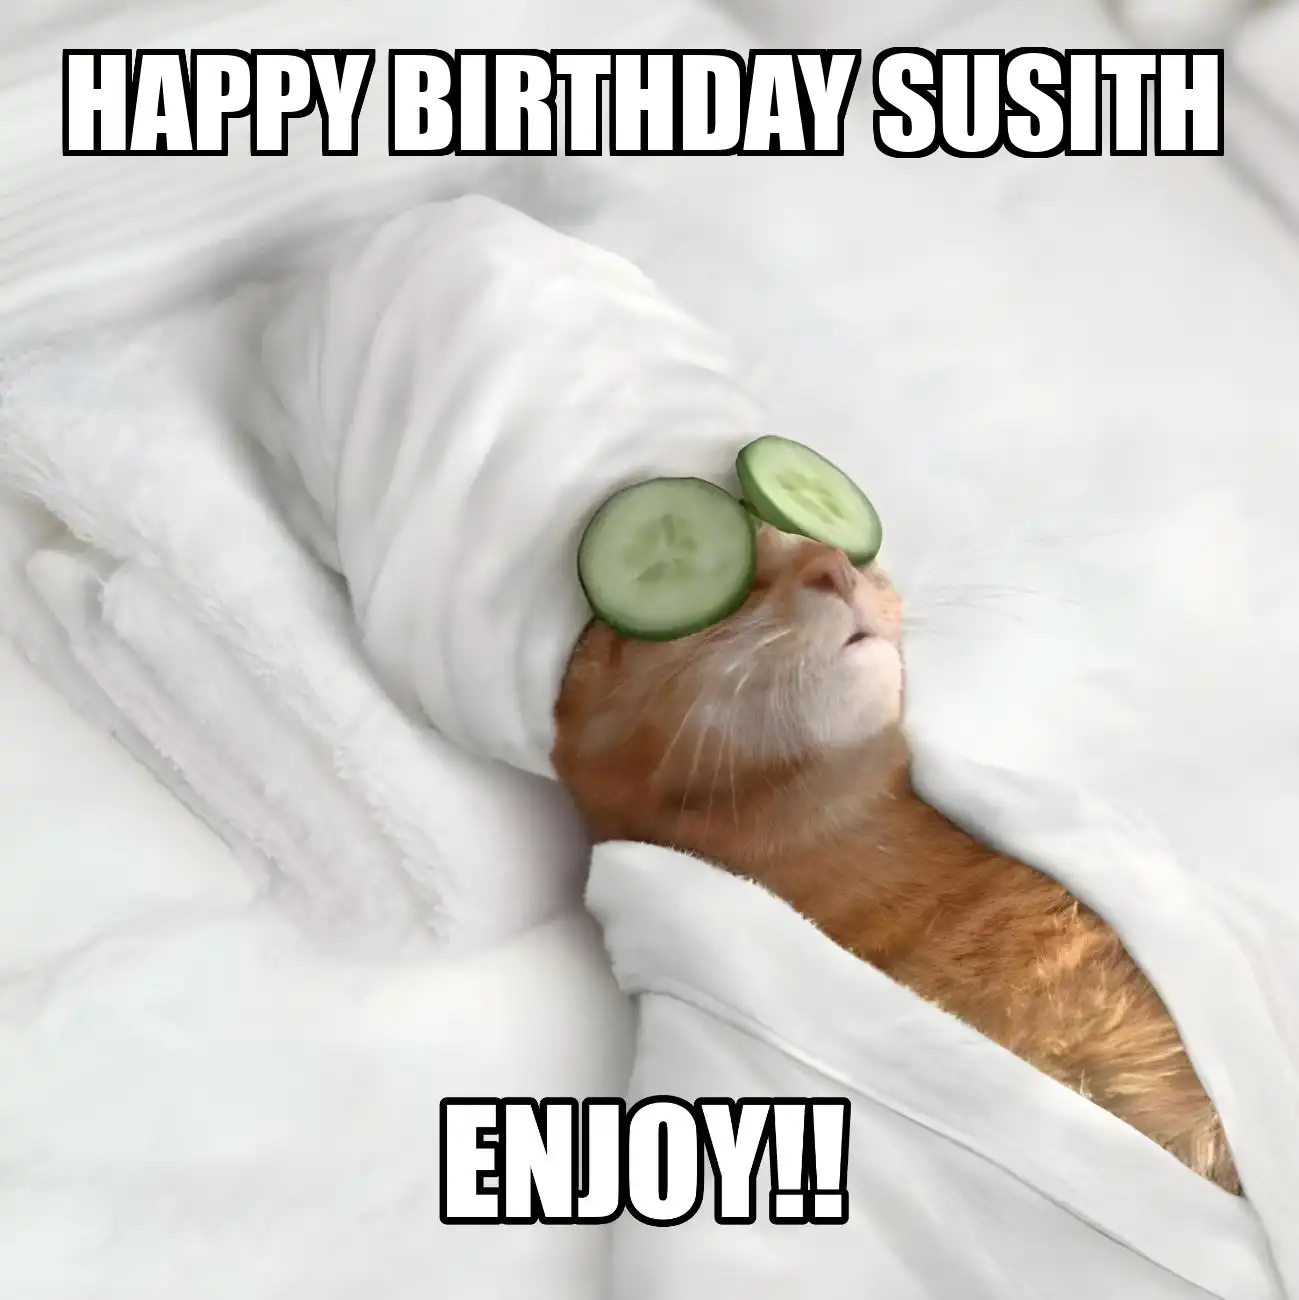 Happy Birthday Susith Enjoy Cat Meme